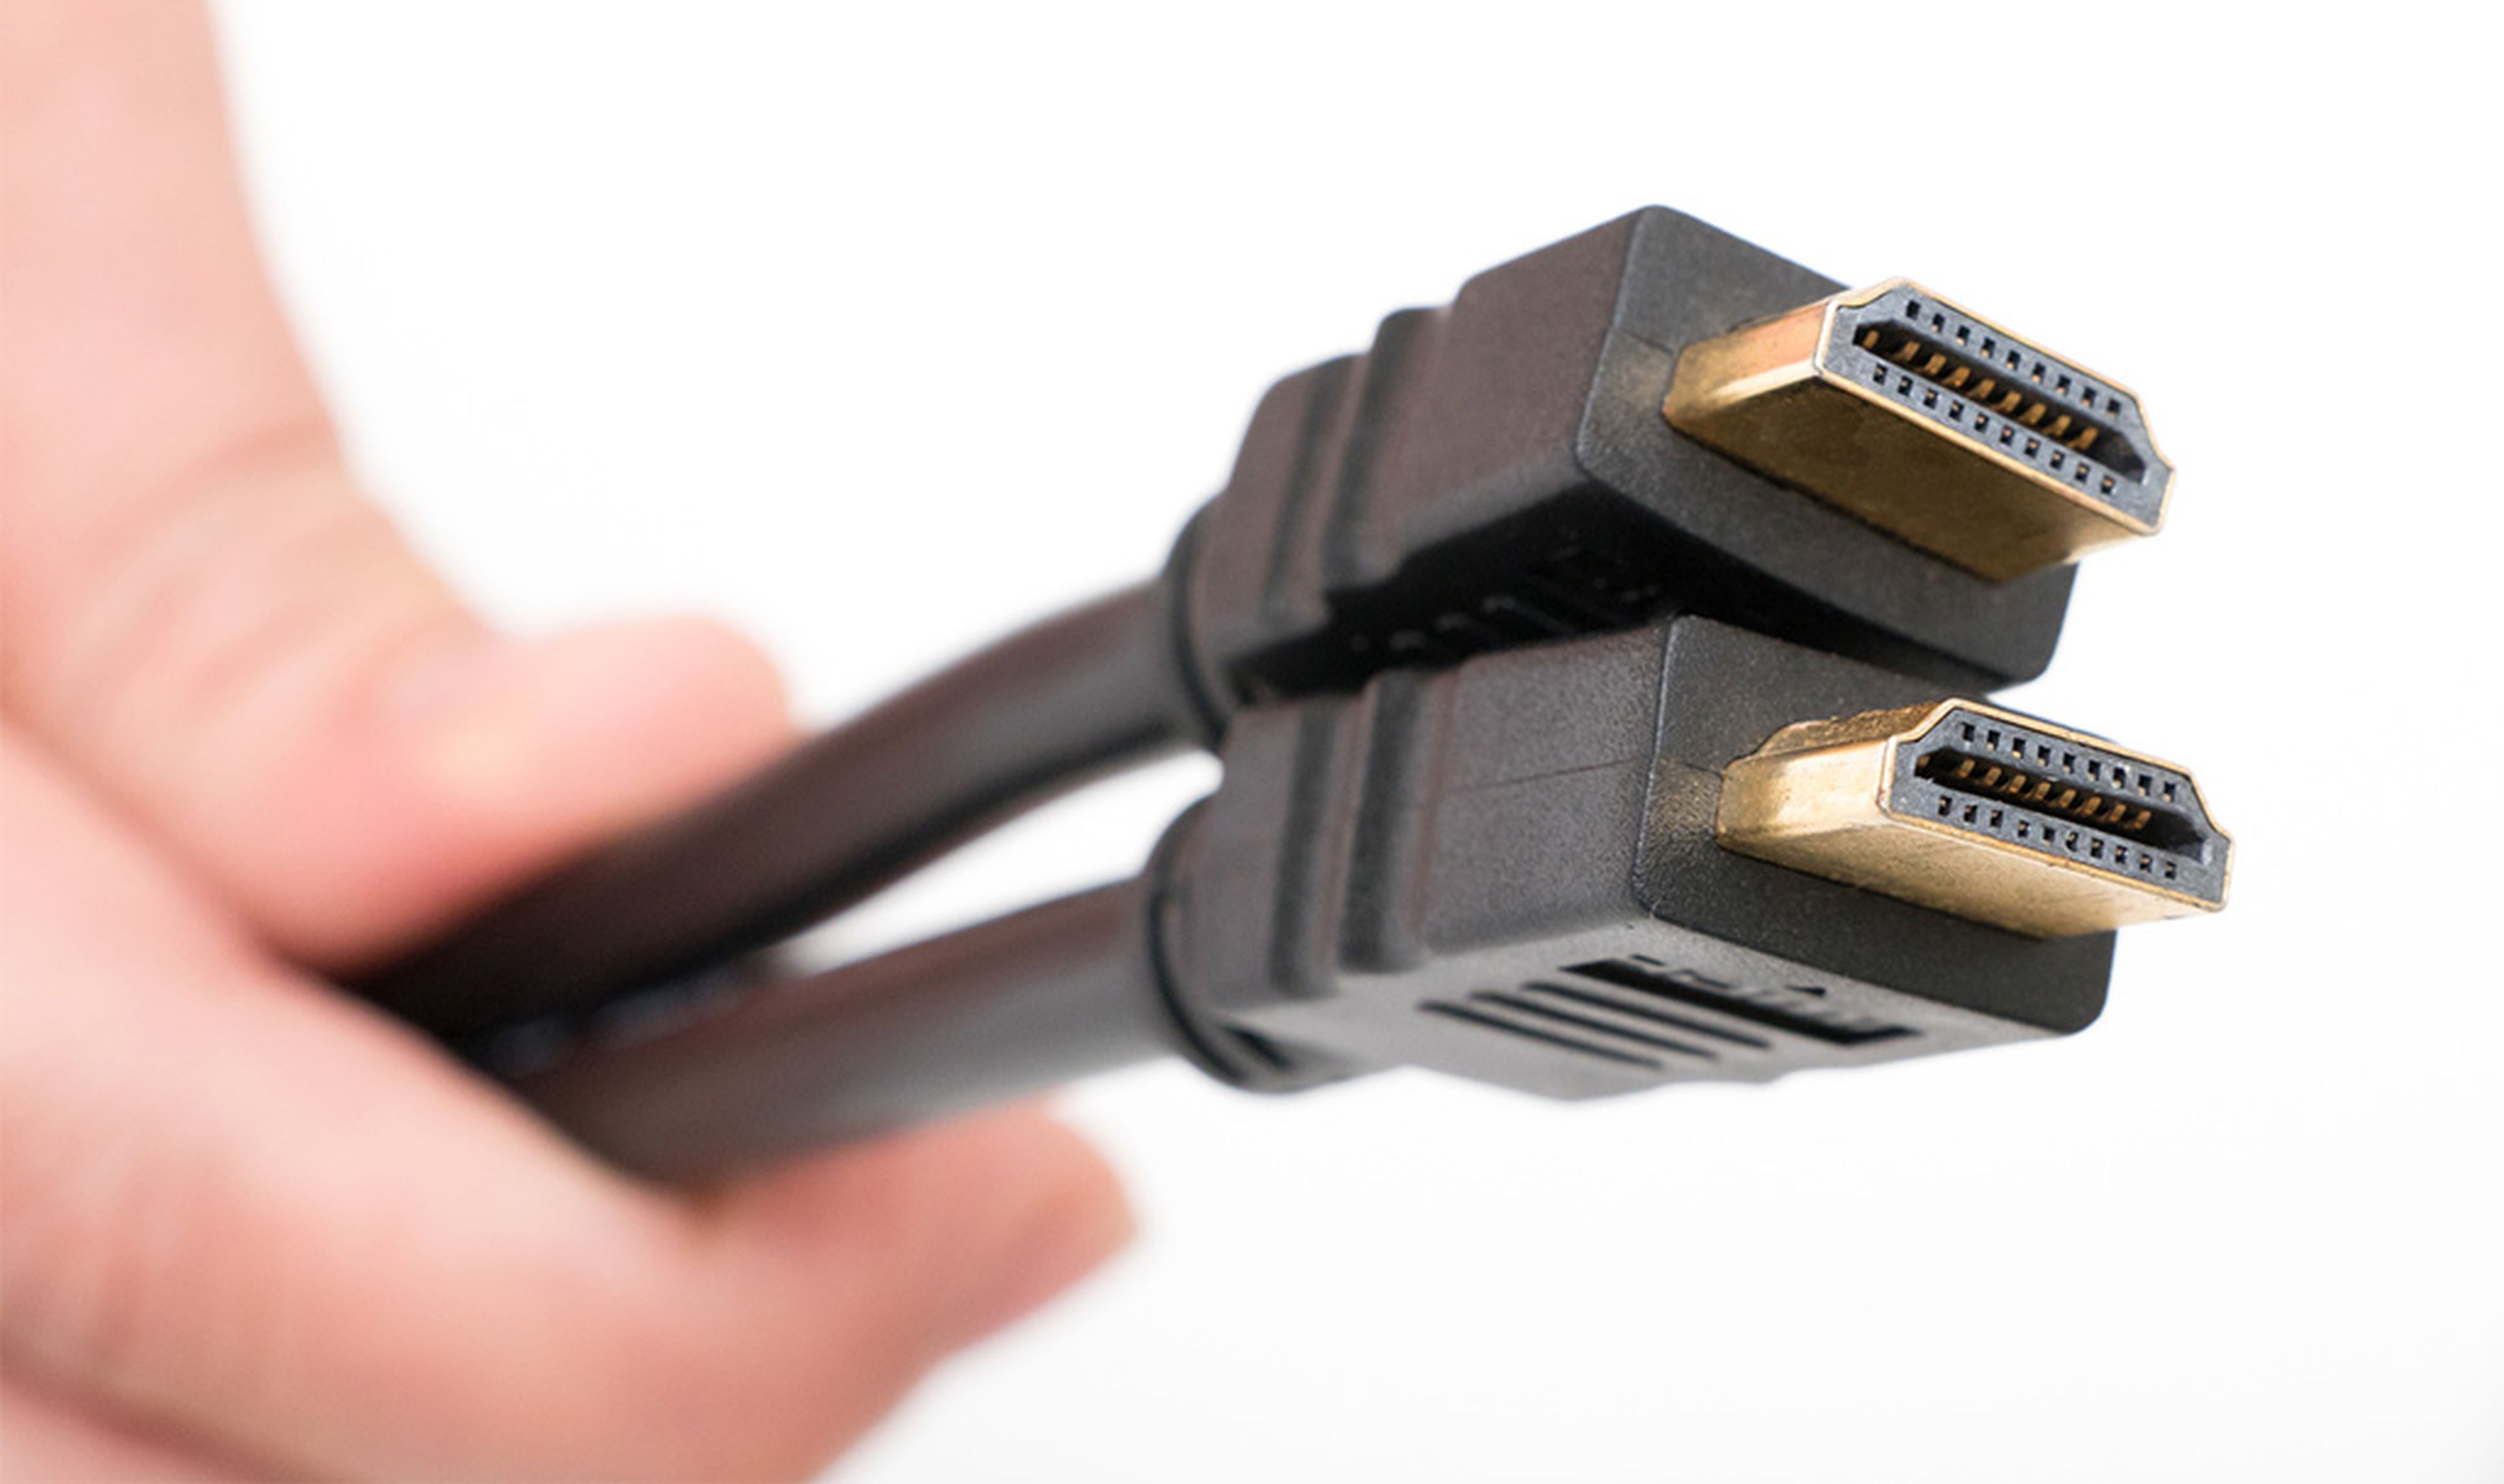 Tipos de cables HDMI y sus diferencias